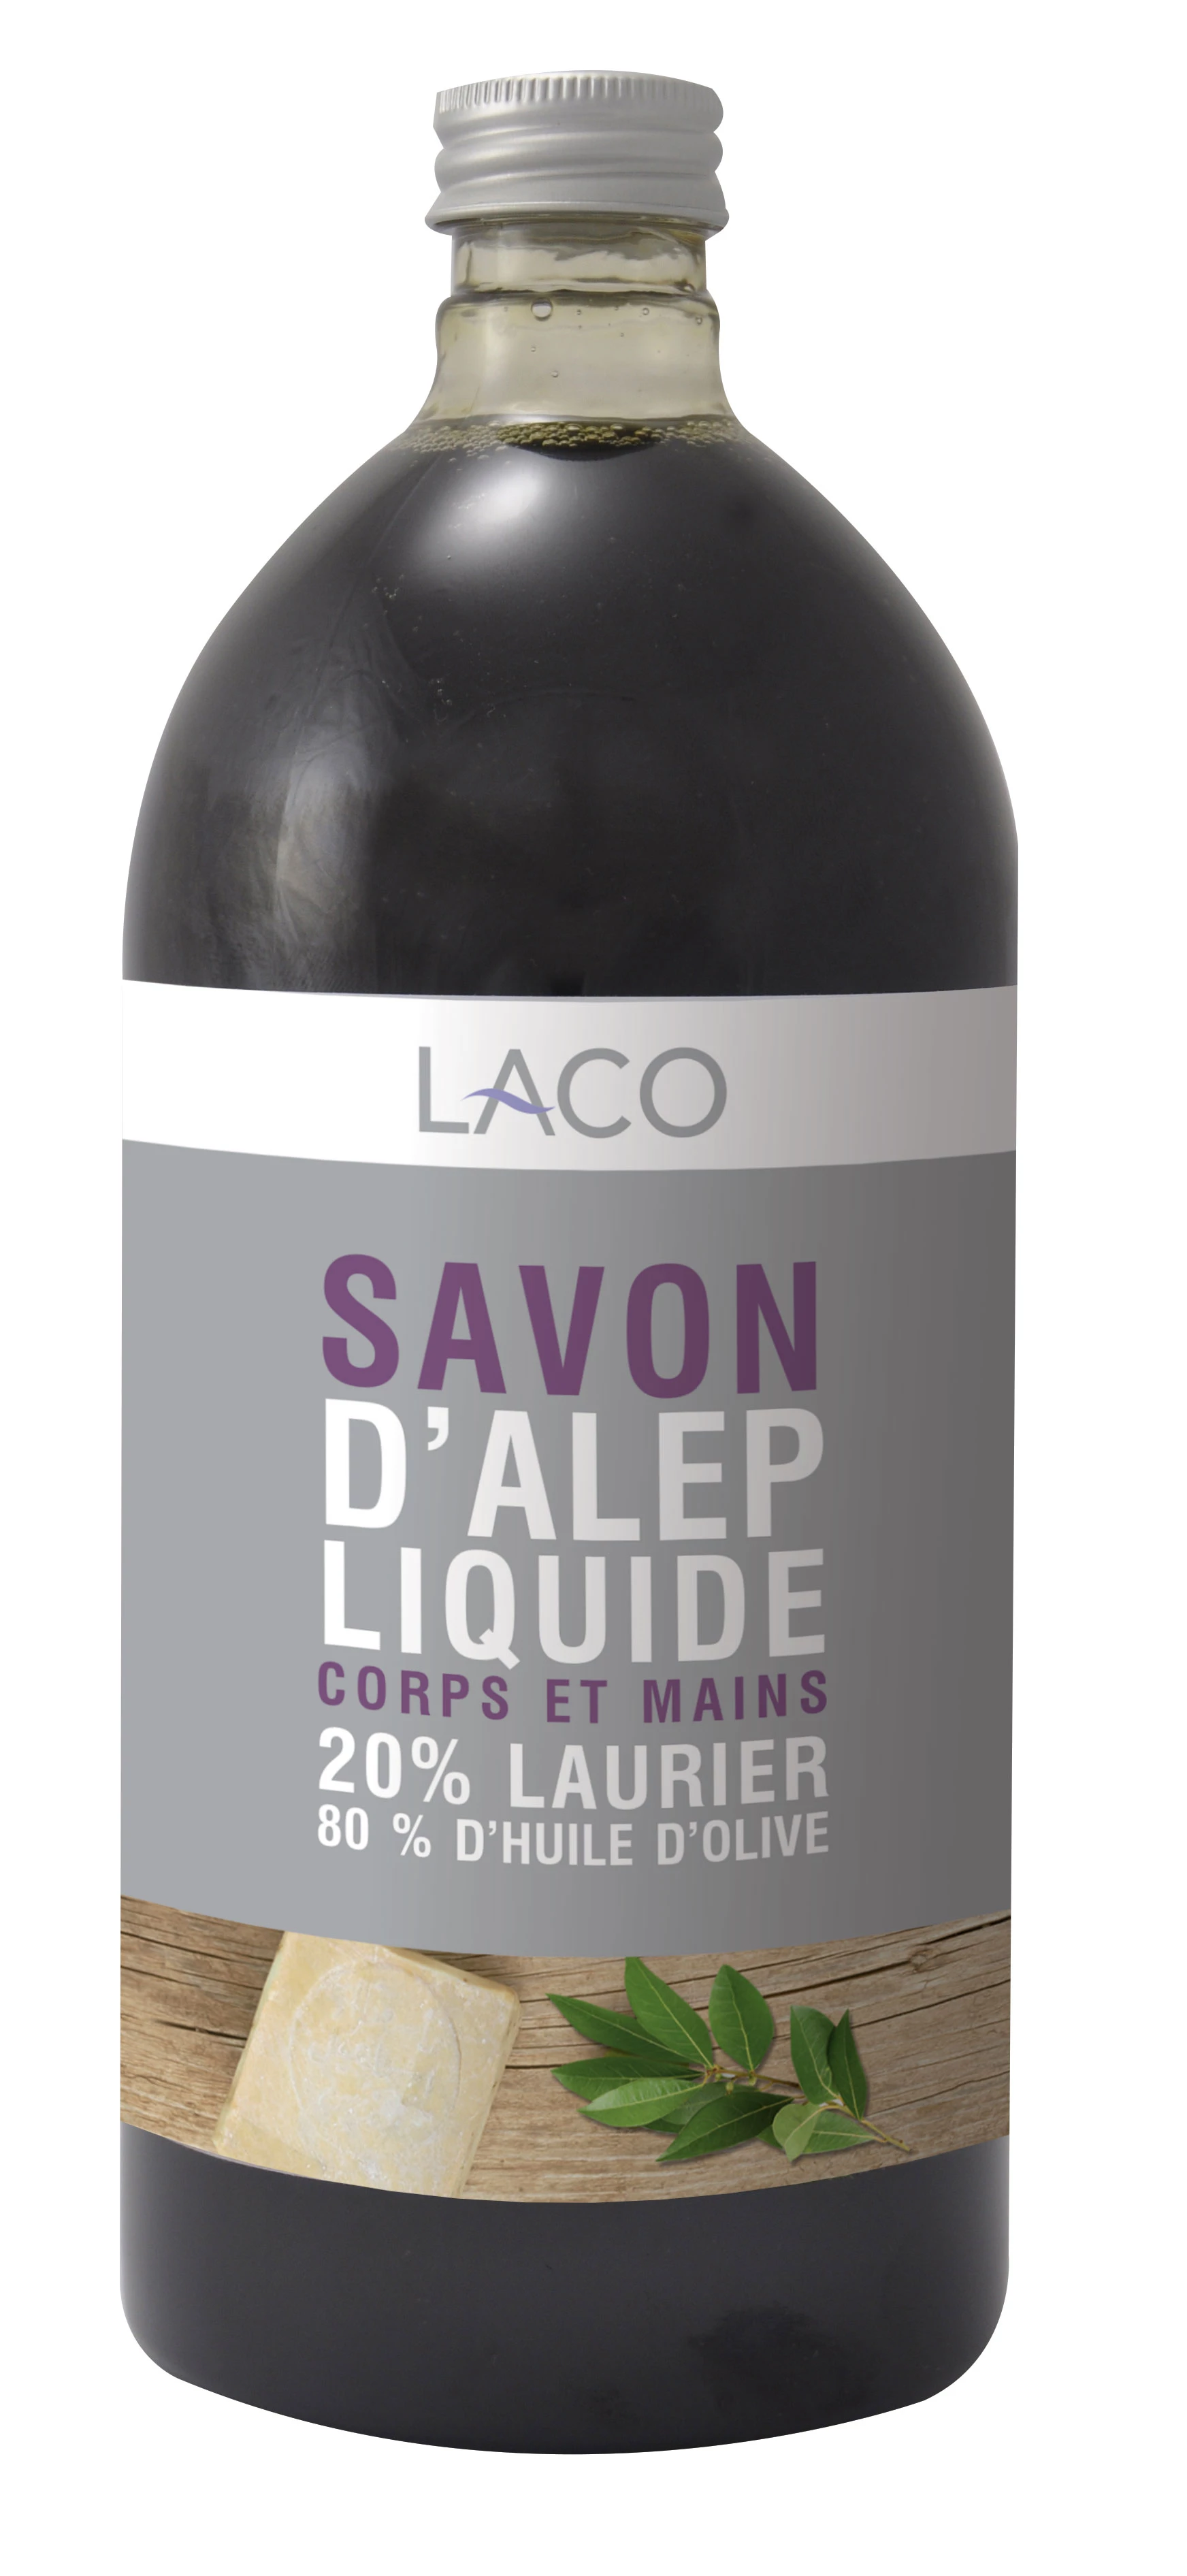 Savon D'alep Liquide, 1L - LACO